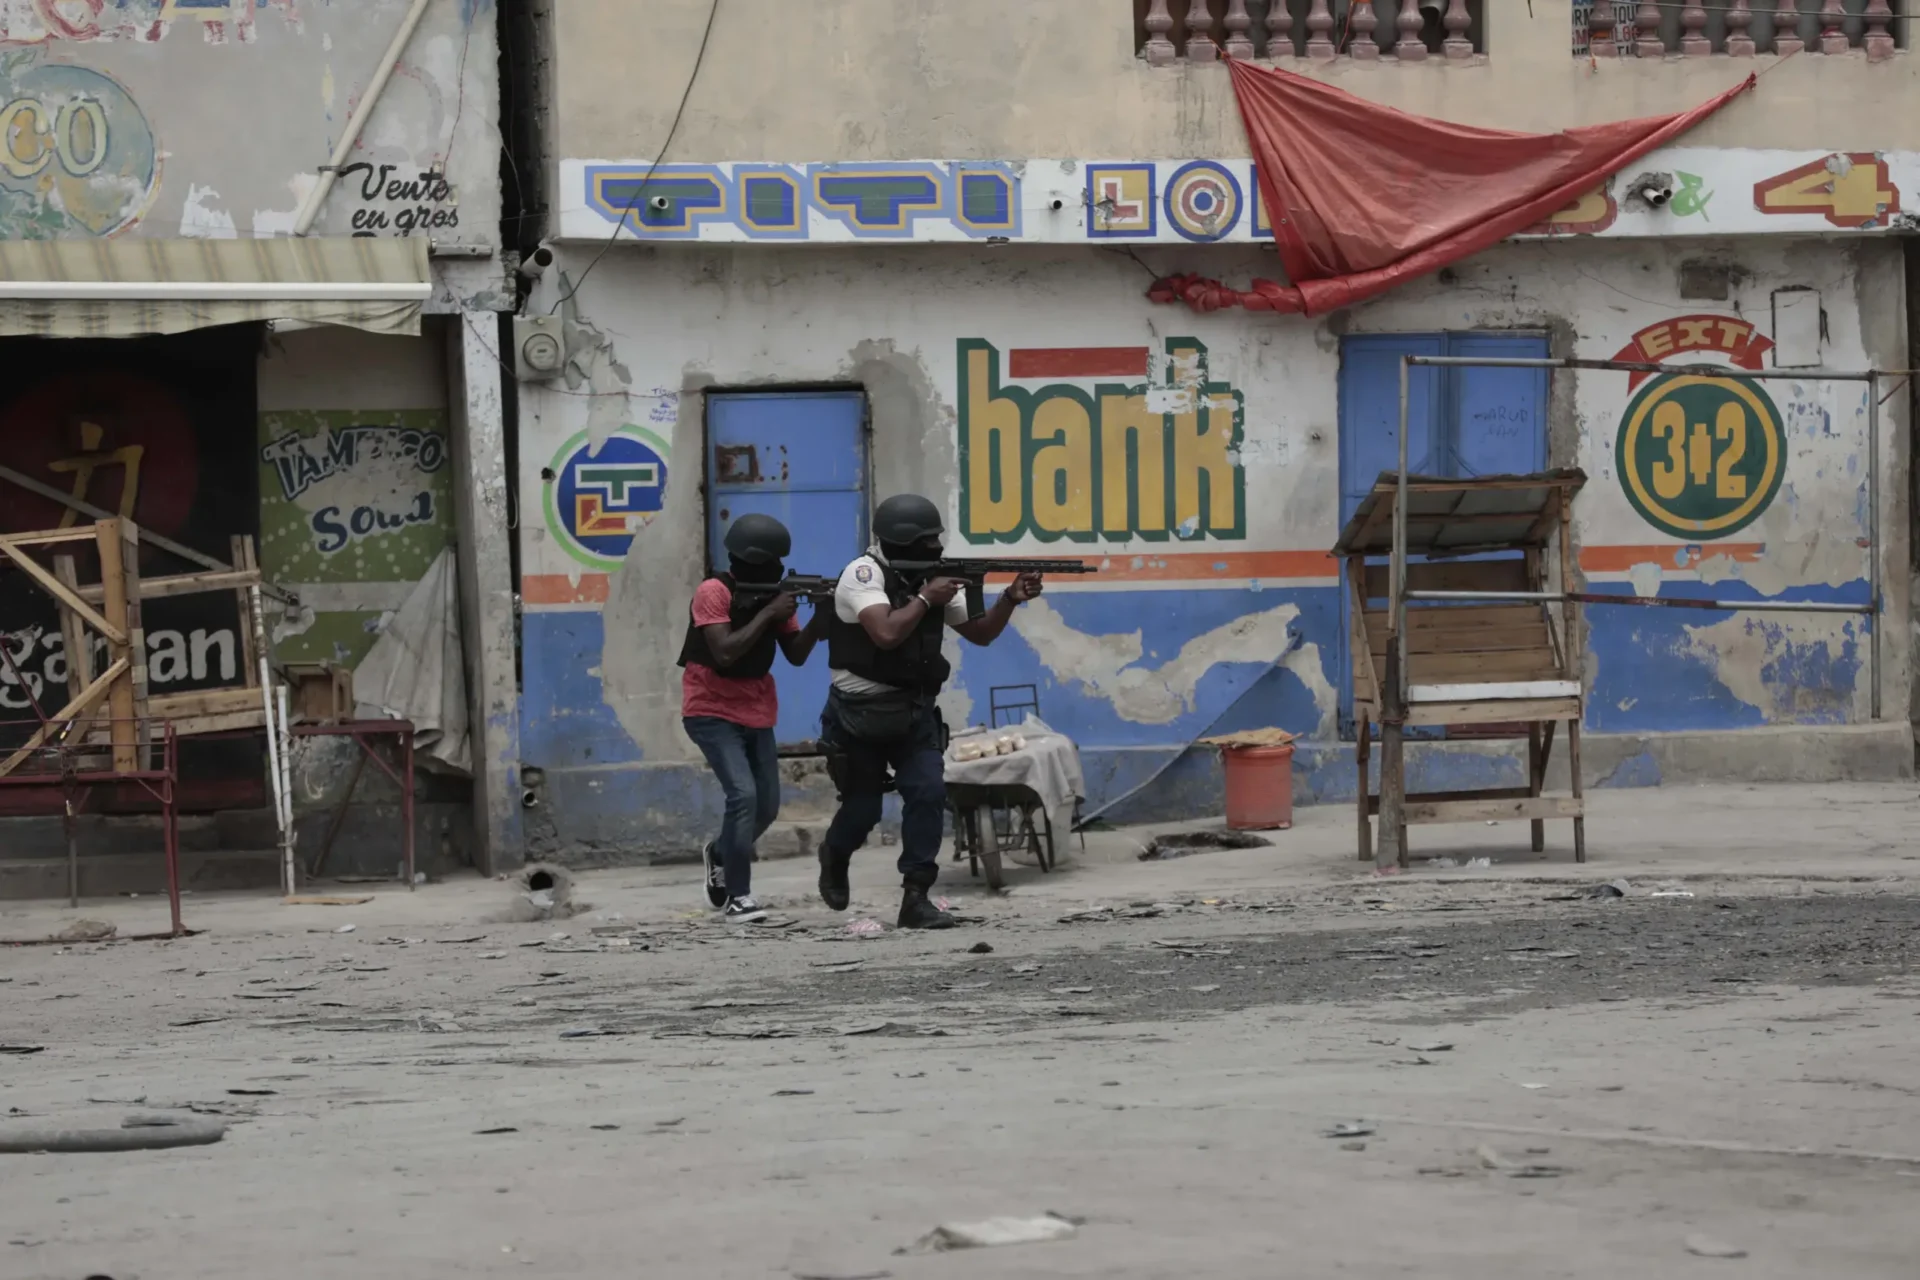 Vecindario lucha contra pandillas haitianas tras asesinatos de vigilantes